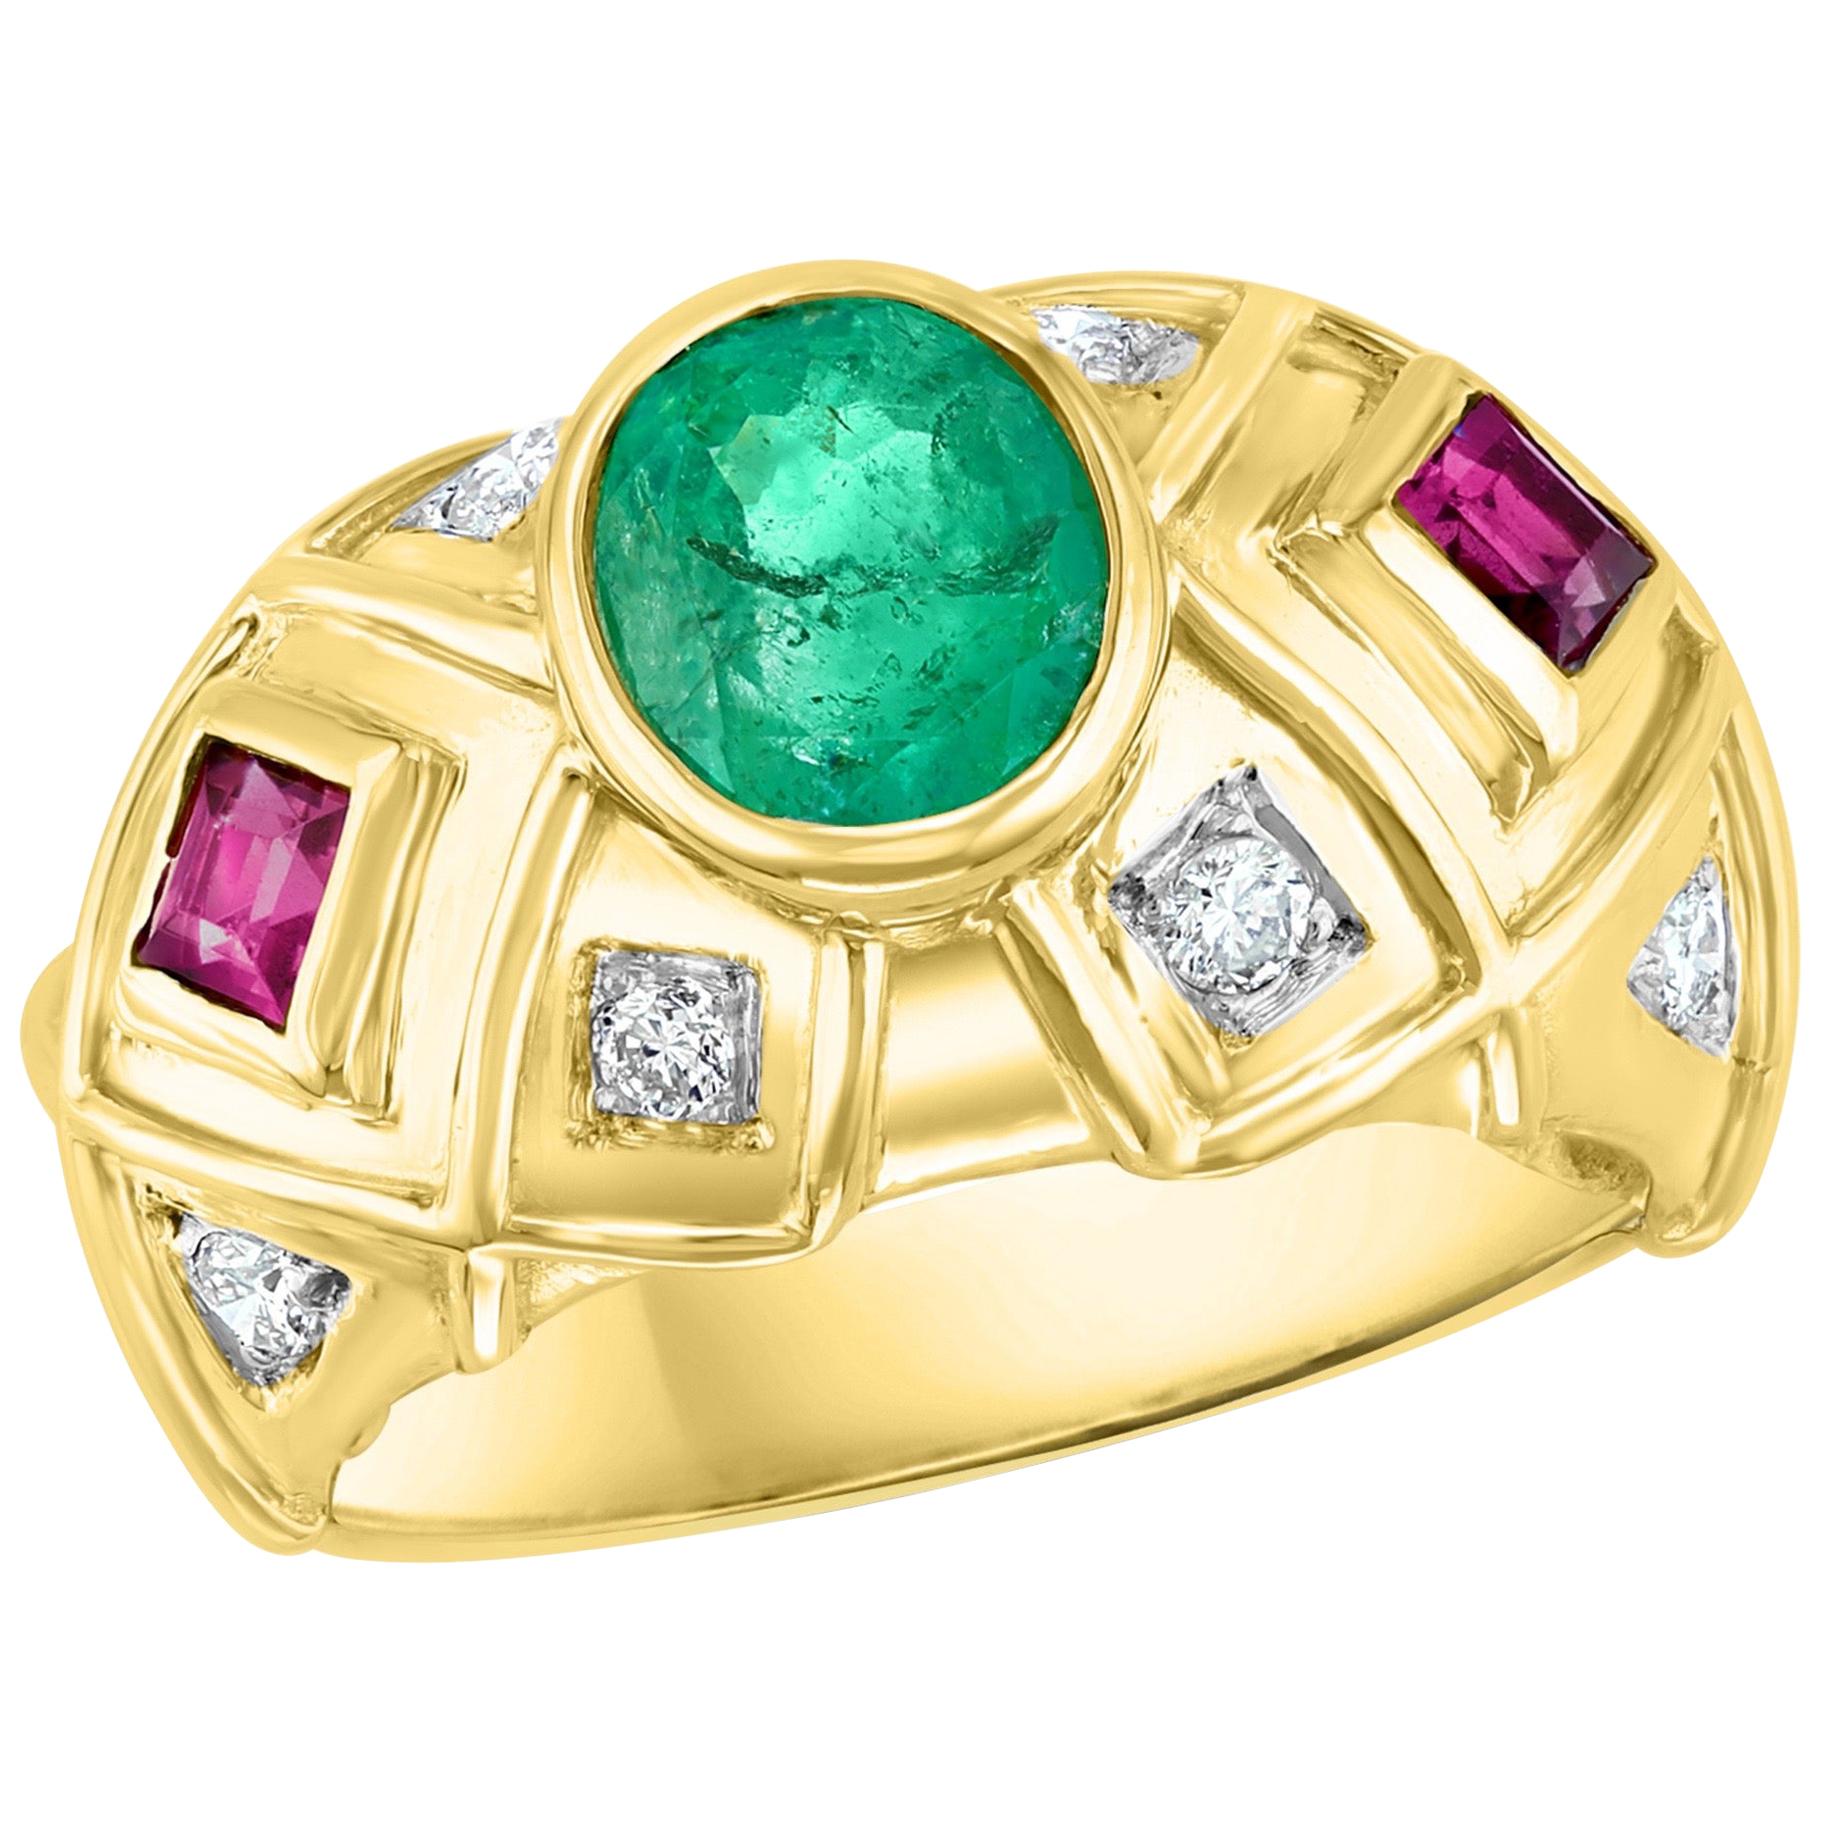 Oval Emerald , Pink Tourmaline  Diamond Ring 18 Karat Yellow Gold,  Size 6.5